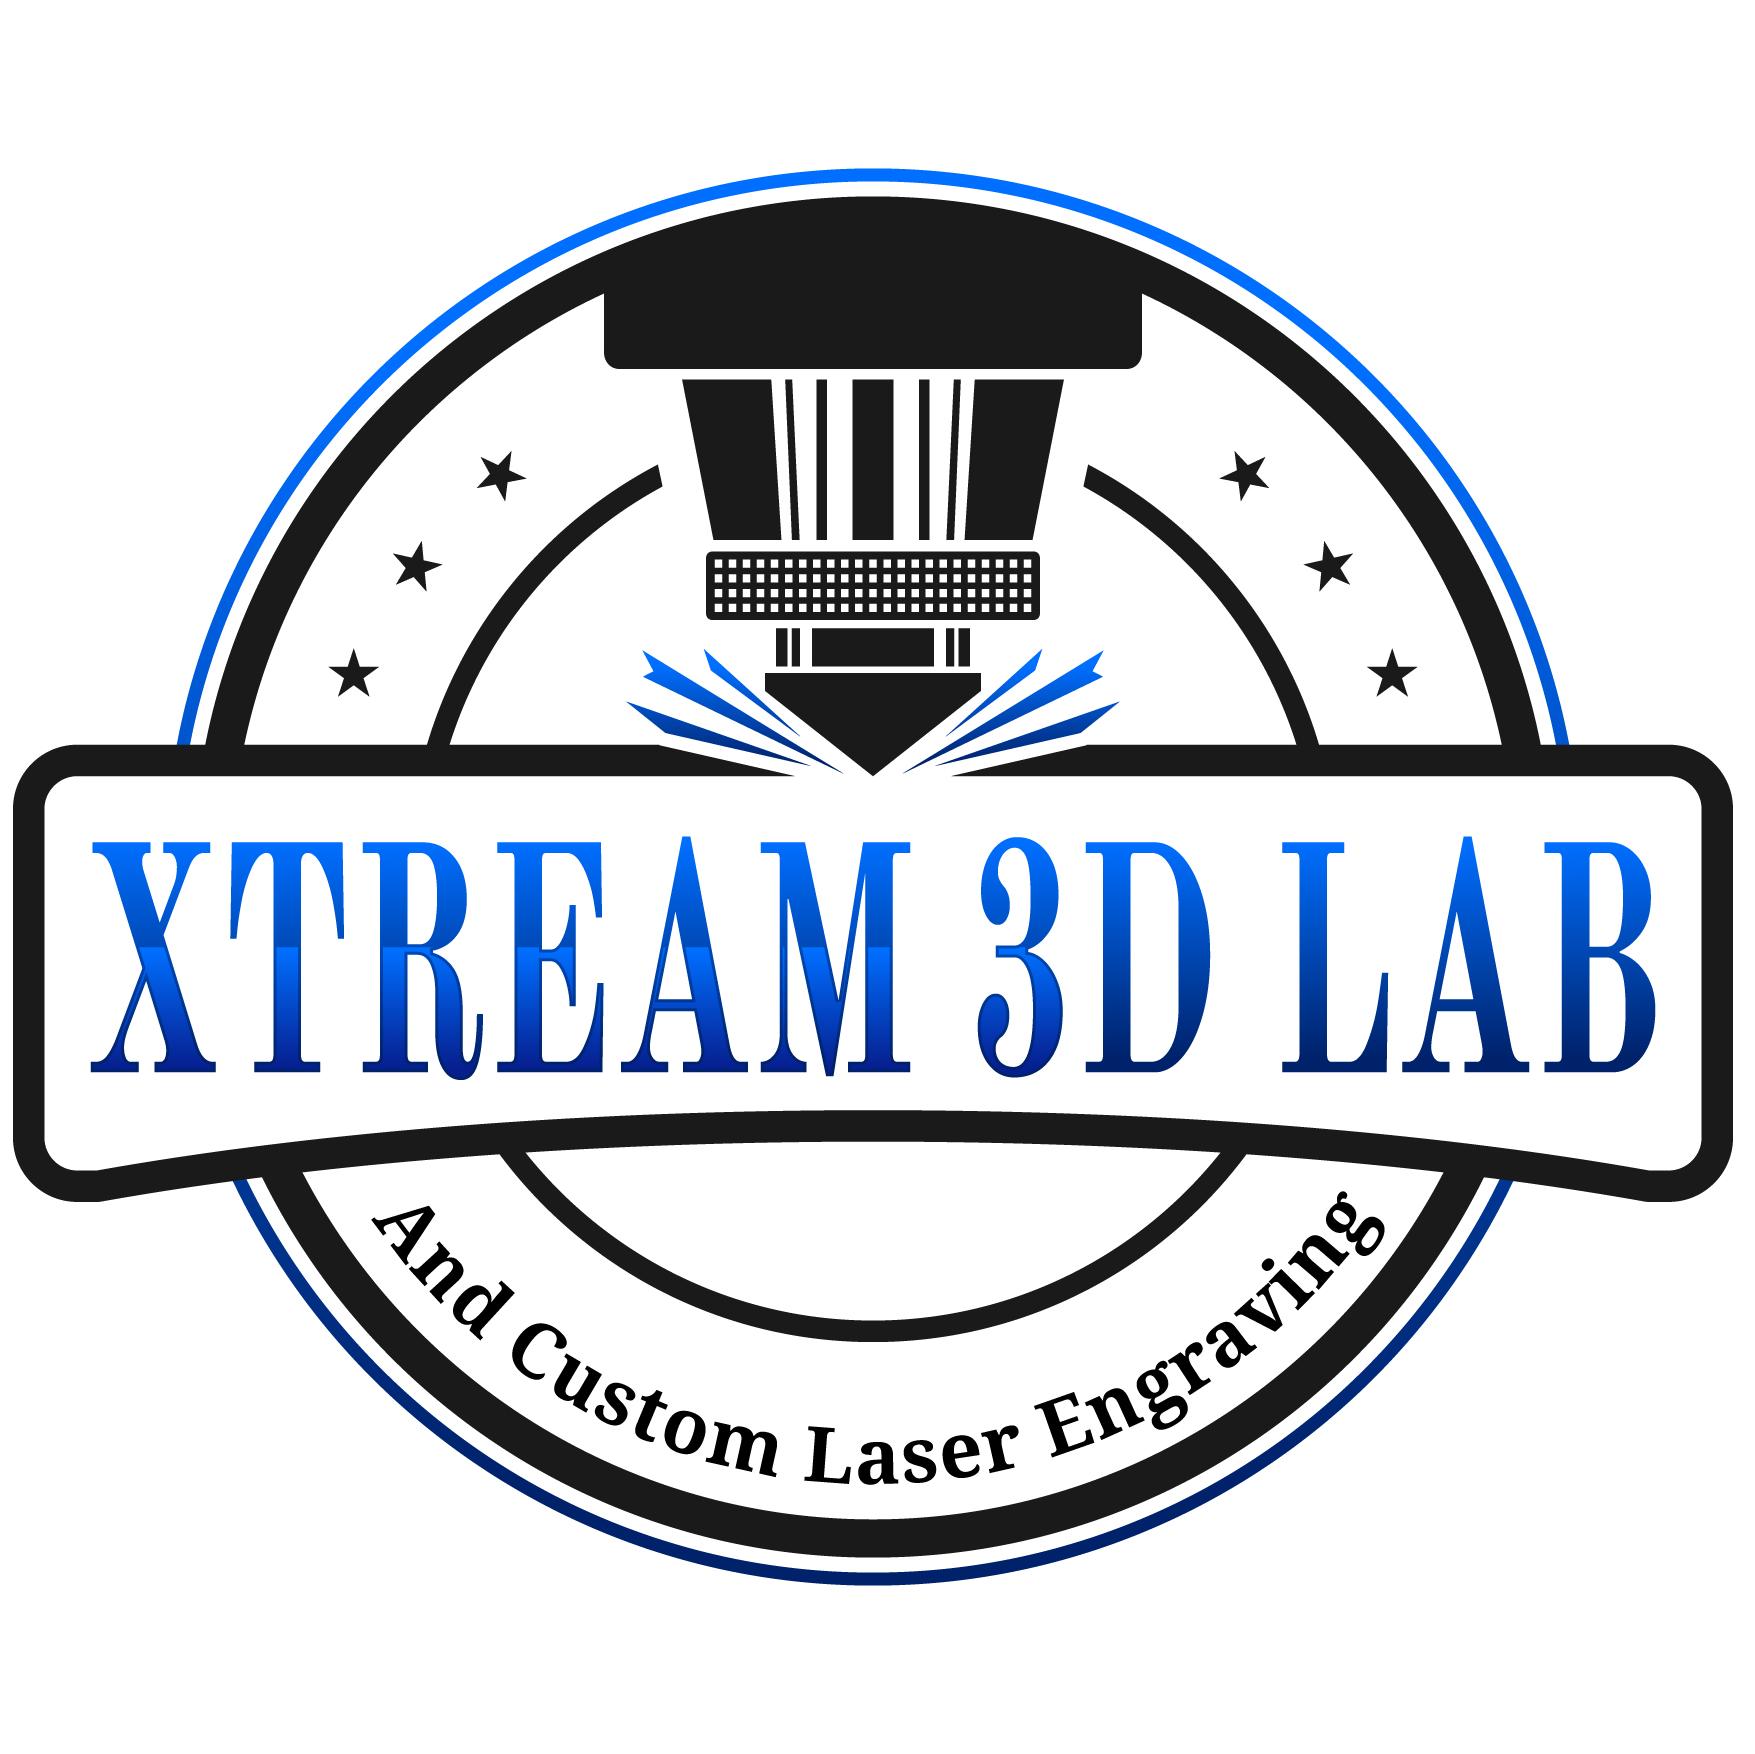 Xtream 3d Lab ltd